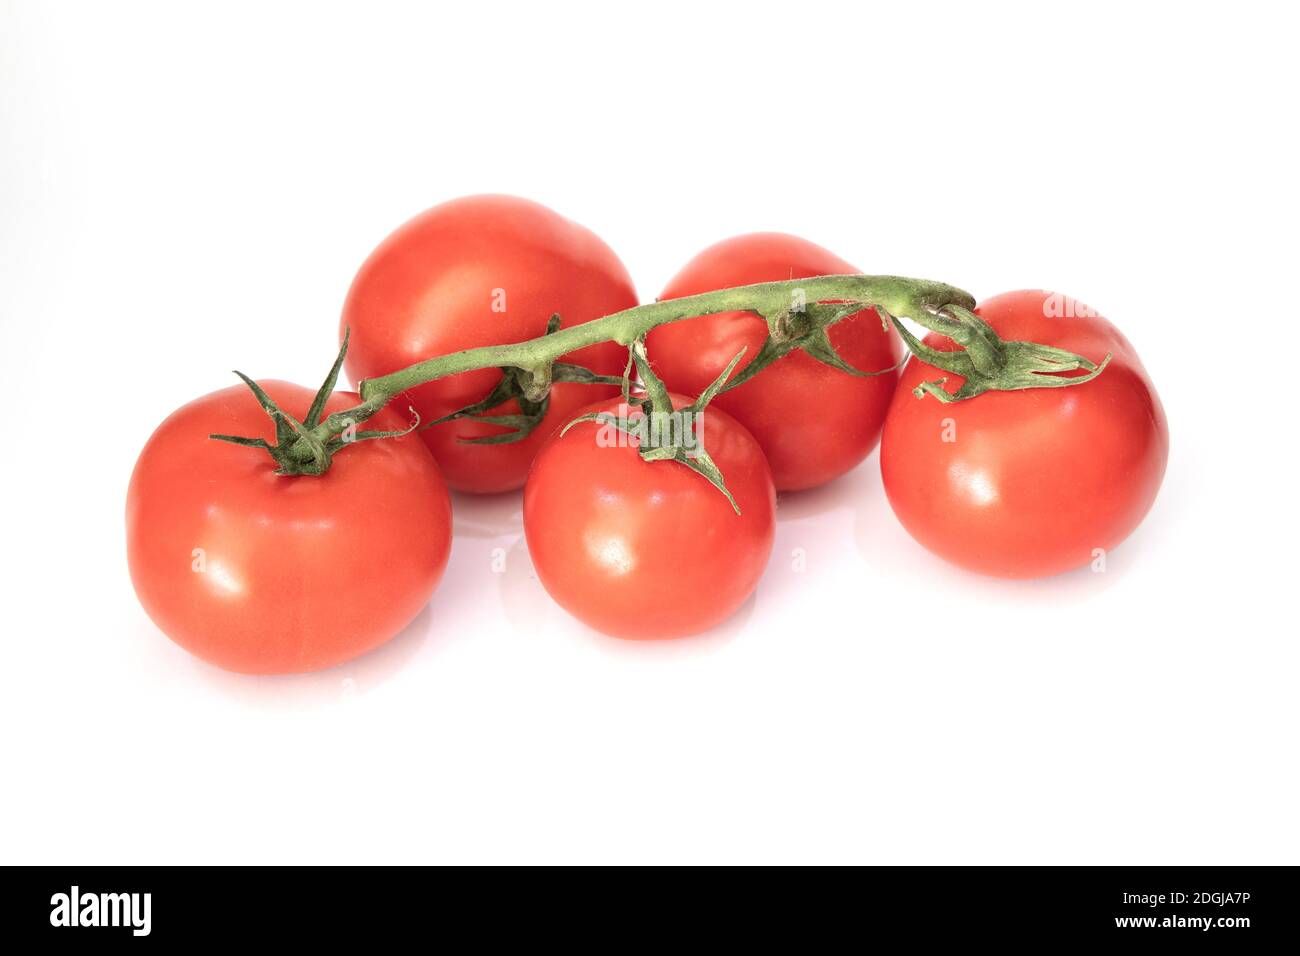 Une branche de tomates cerises rouges juteuses fraîches sur fond blanc. Banque D'Images